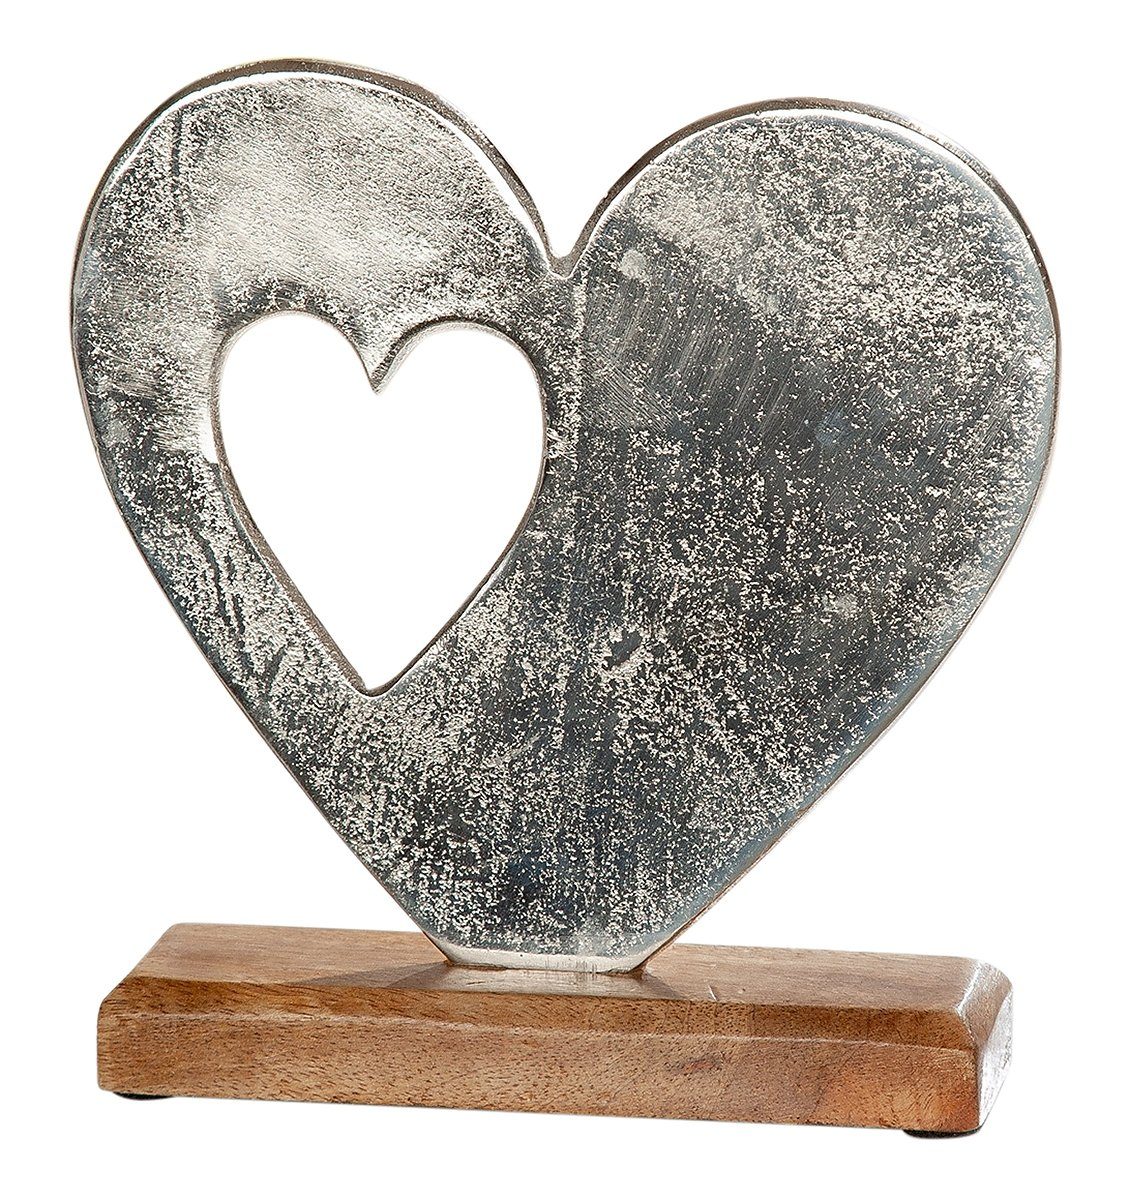 NO NAME Dekofigur Herzfigur aus Alu auf Holzsockel mit zweitem Herz, Skulptur, Sammlerfigur, Herzfigur, Weihnachtsfigur